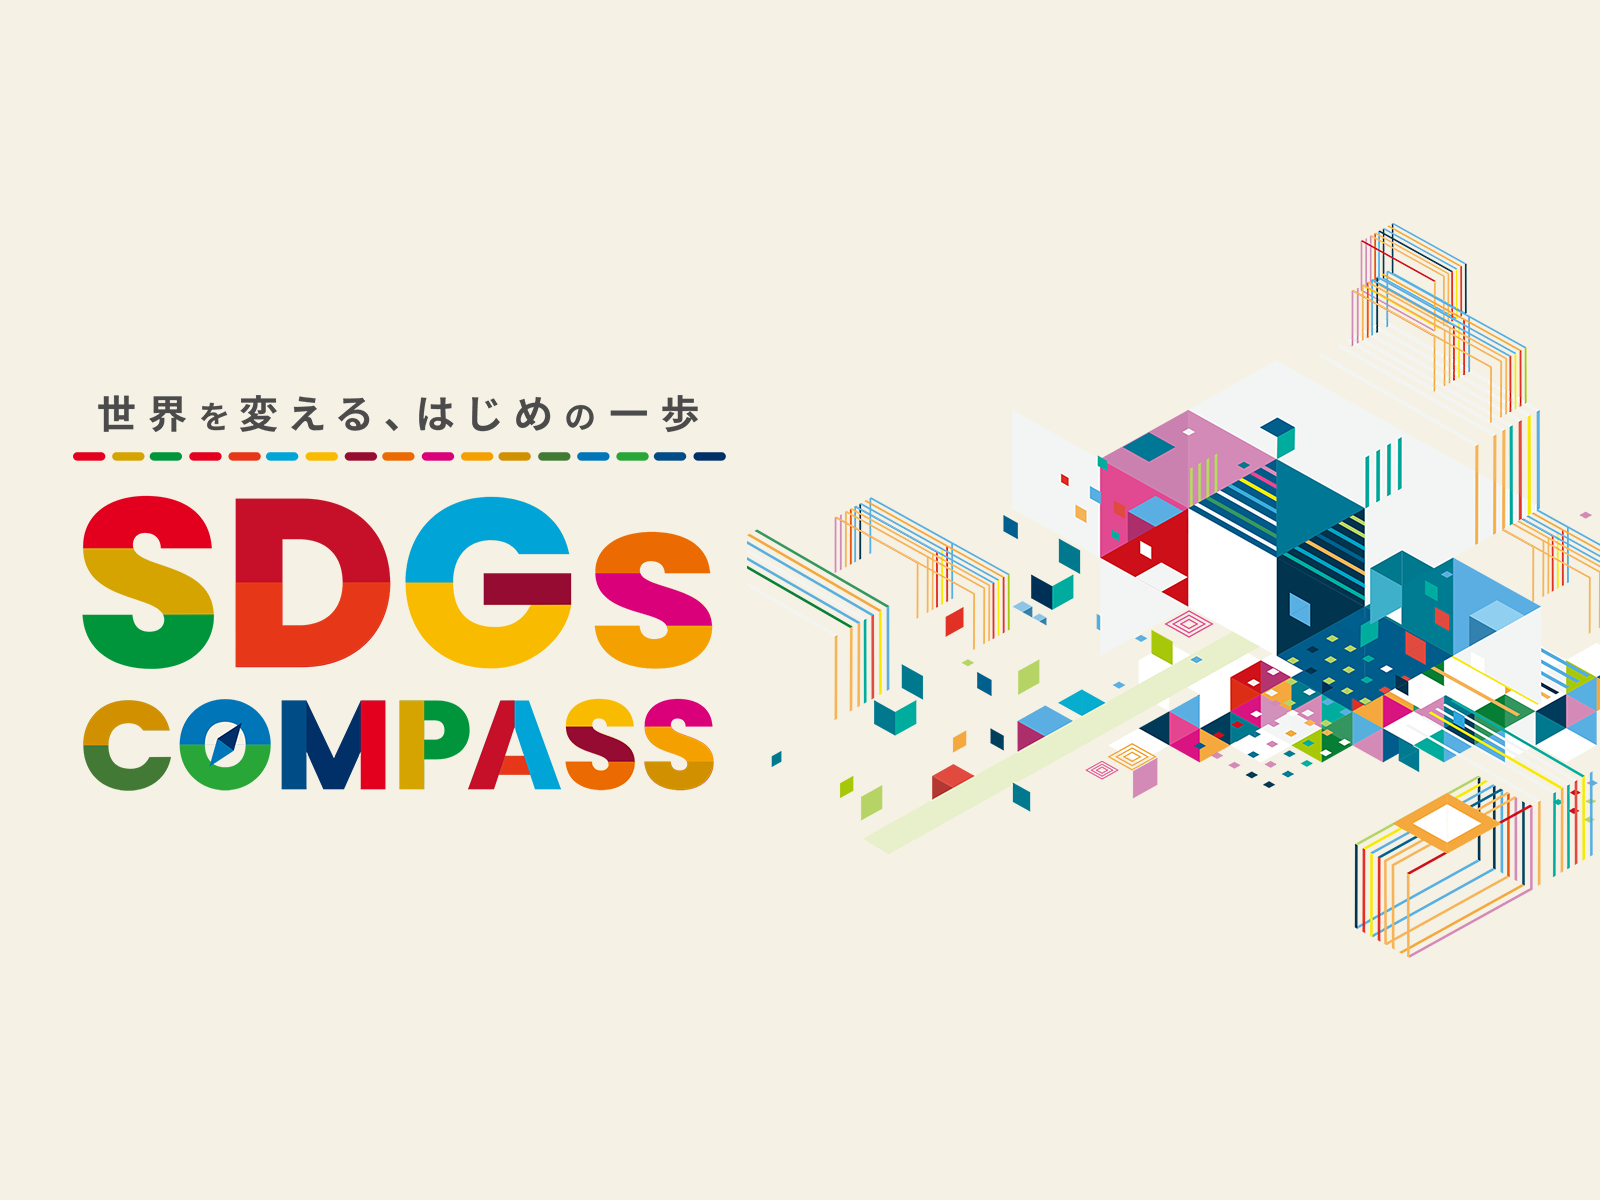 【企業様向け】SDGsコンパス ご紹介資料